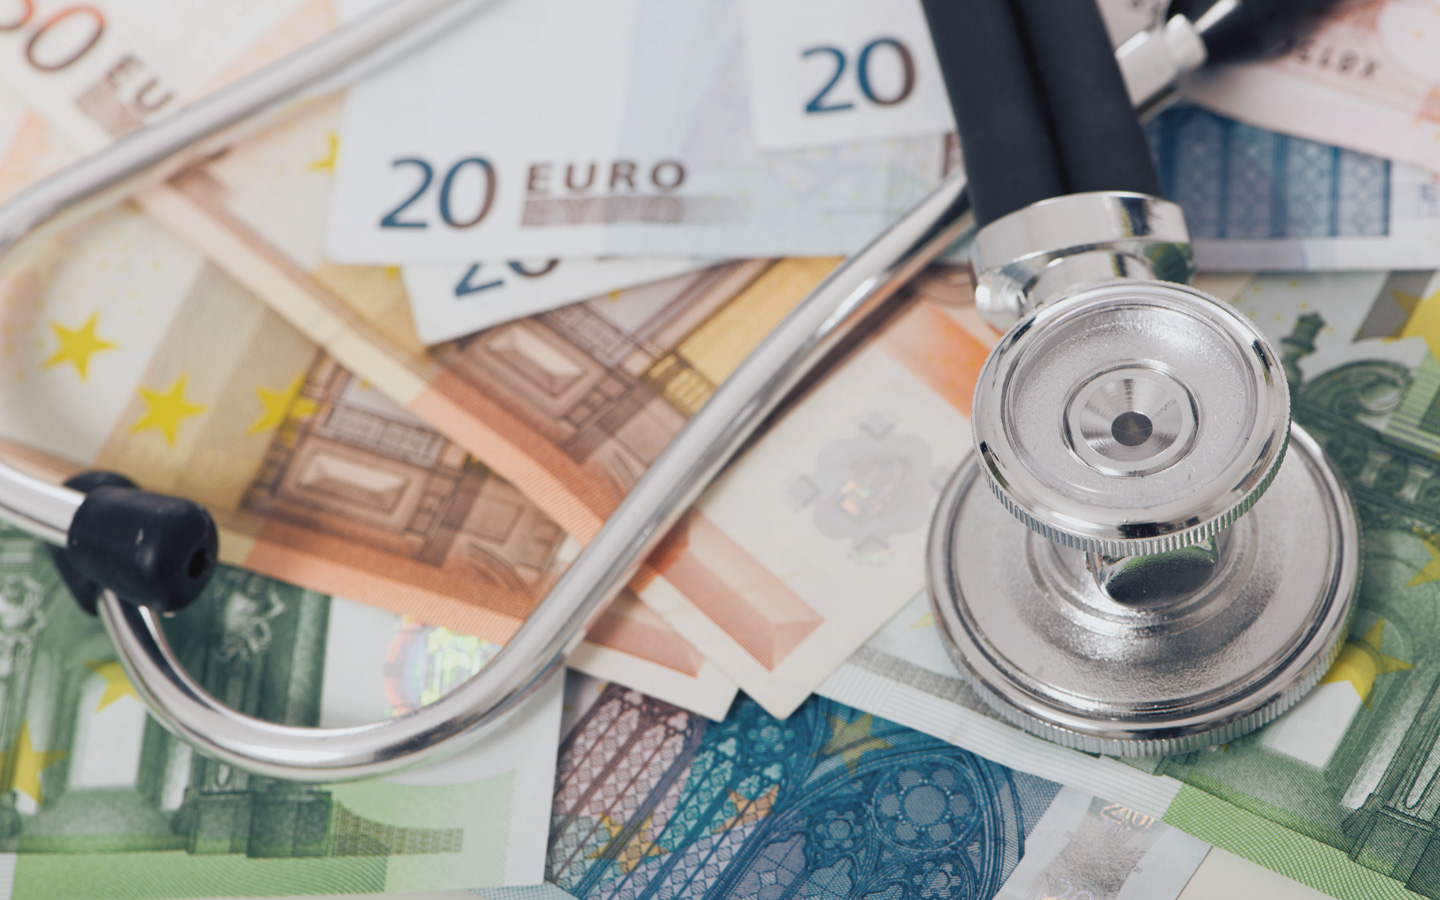 Foto: Geldscheine in Euro und ein Stethoskop